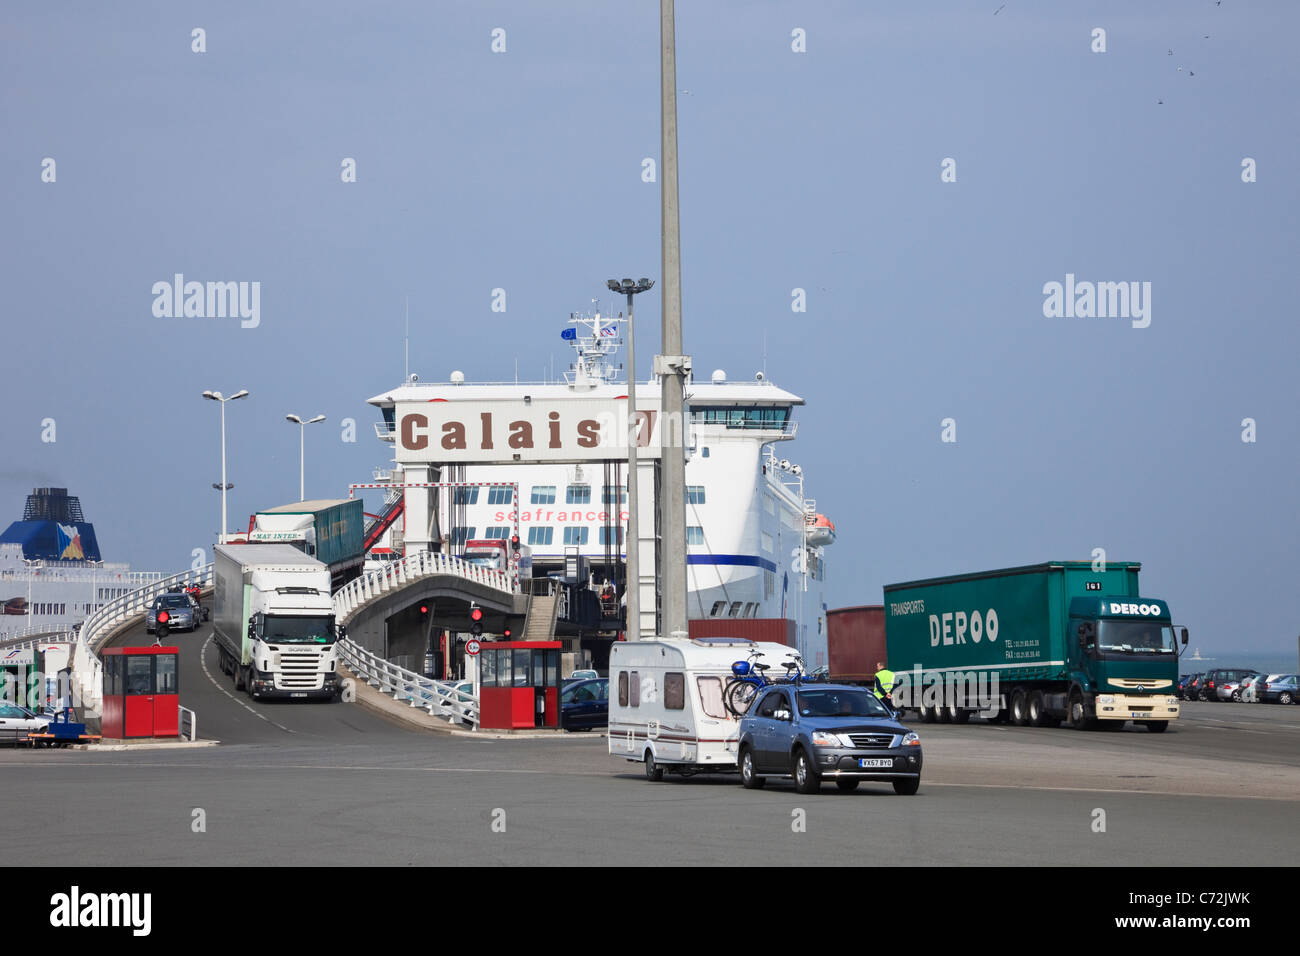 Des voitures et des camions débarquent du service de ferry de la Manche SeaFrance depuis Douvres au terminal portuaire de Calais, France, Europe. Banque D'Images